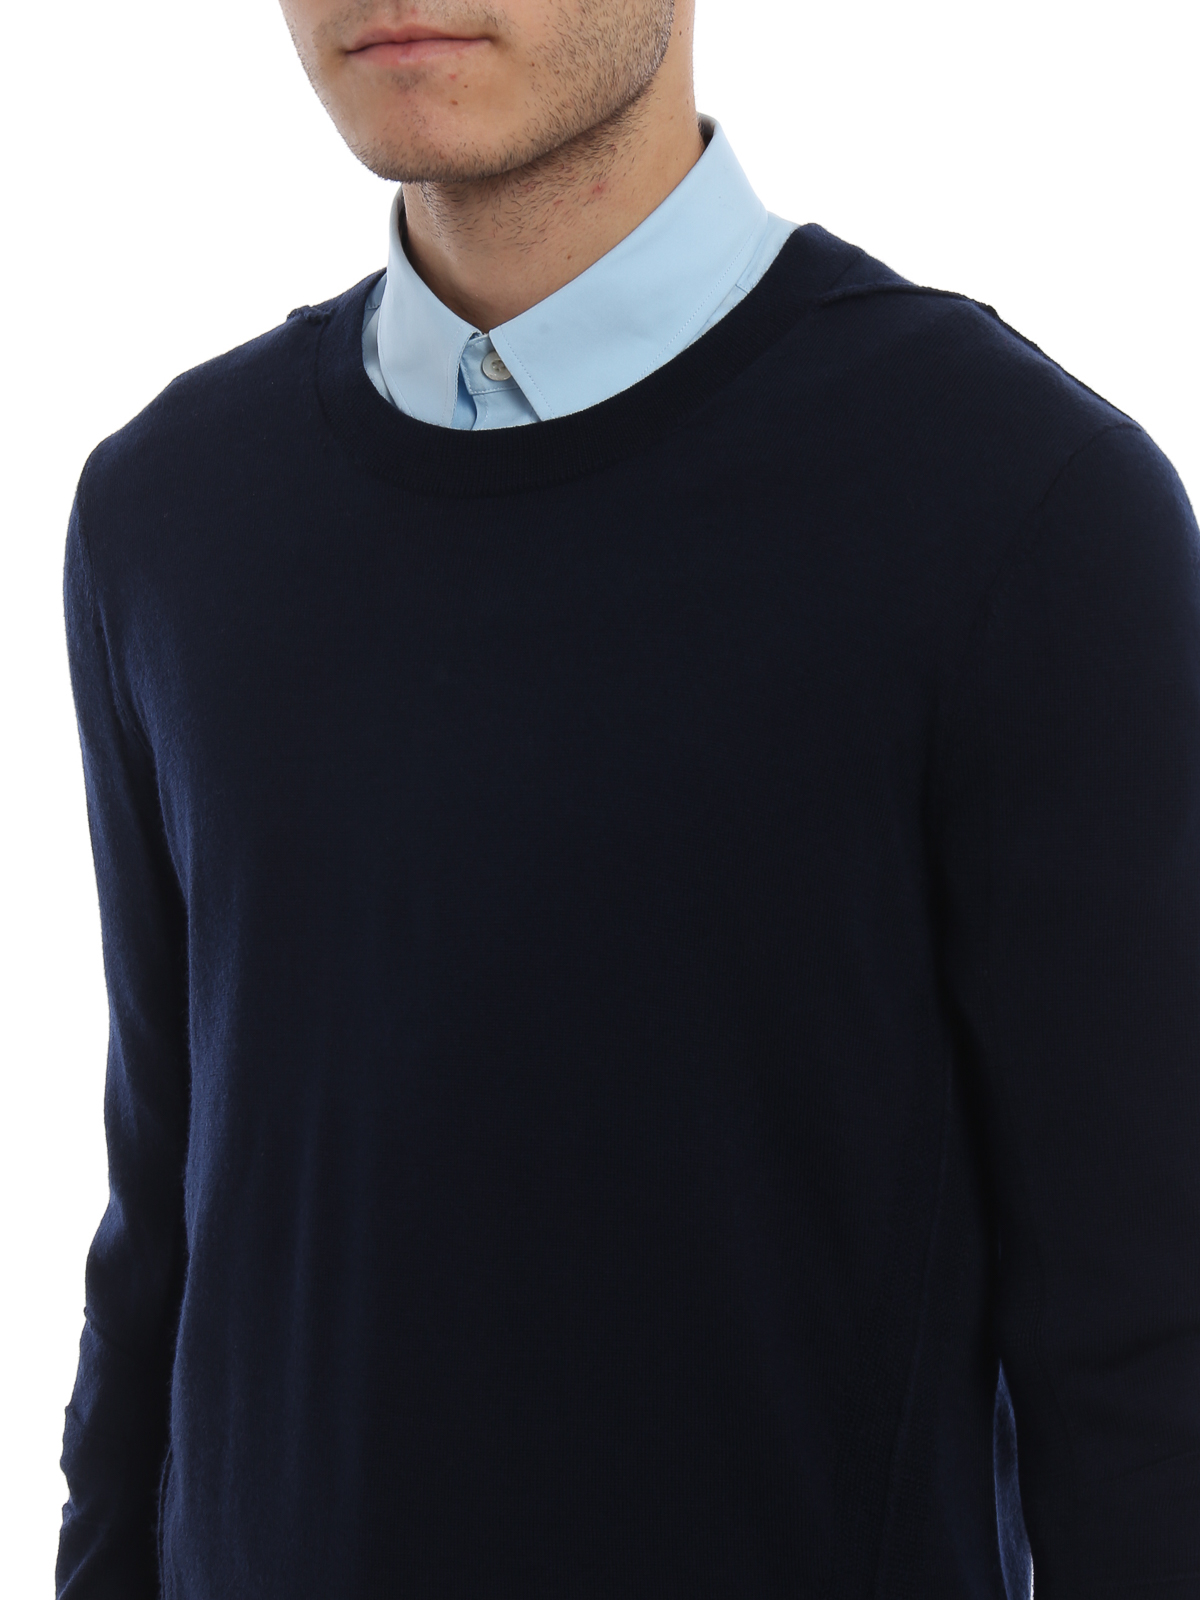 Crew necks Burberry - Carter navy blue wool sweater - 4061742 